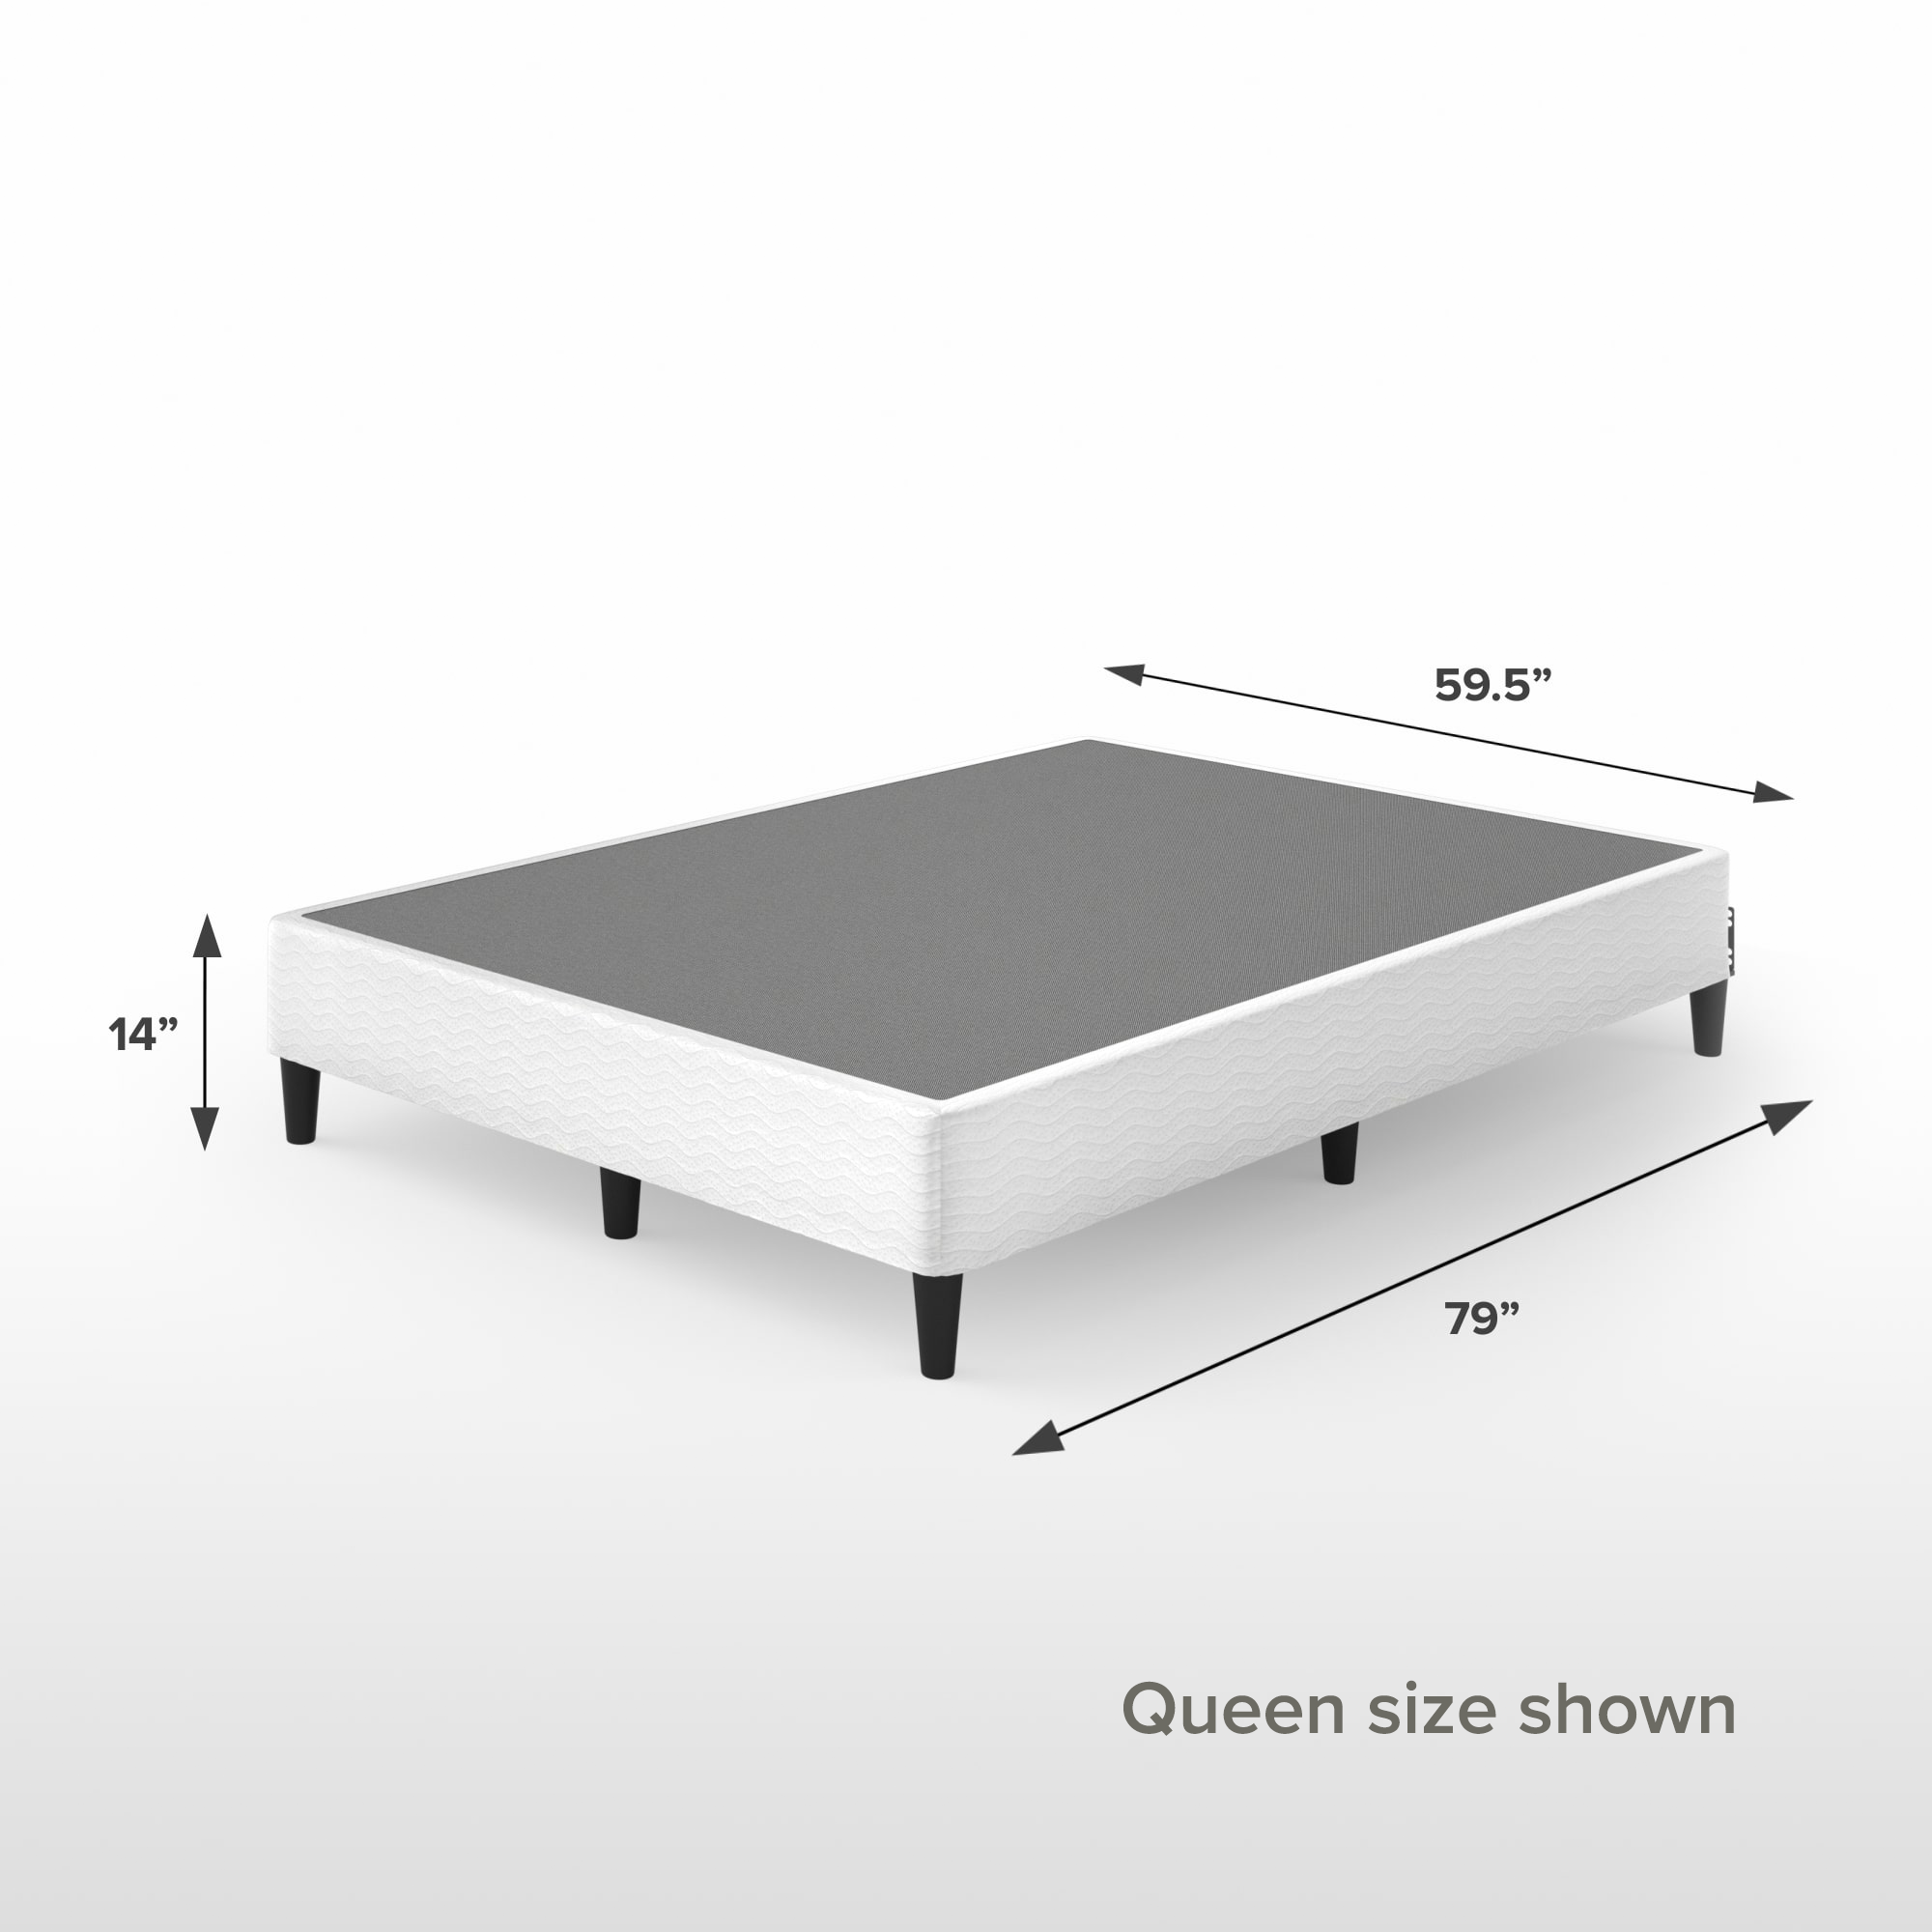 Keenan Metal Mattress Foundation queen size shown